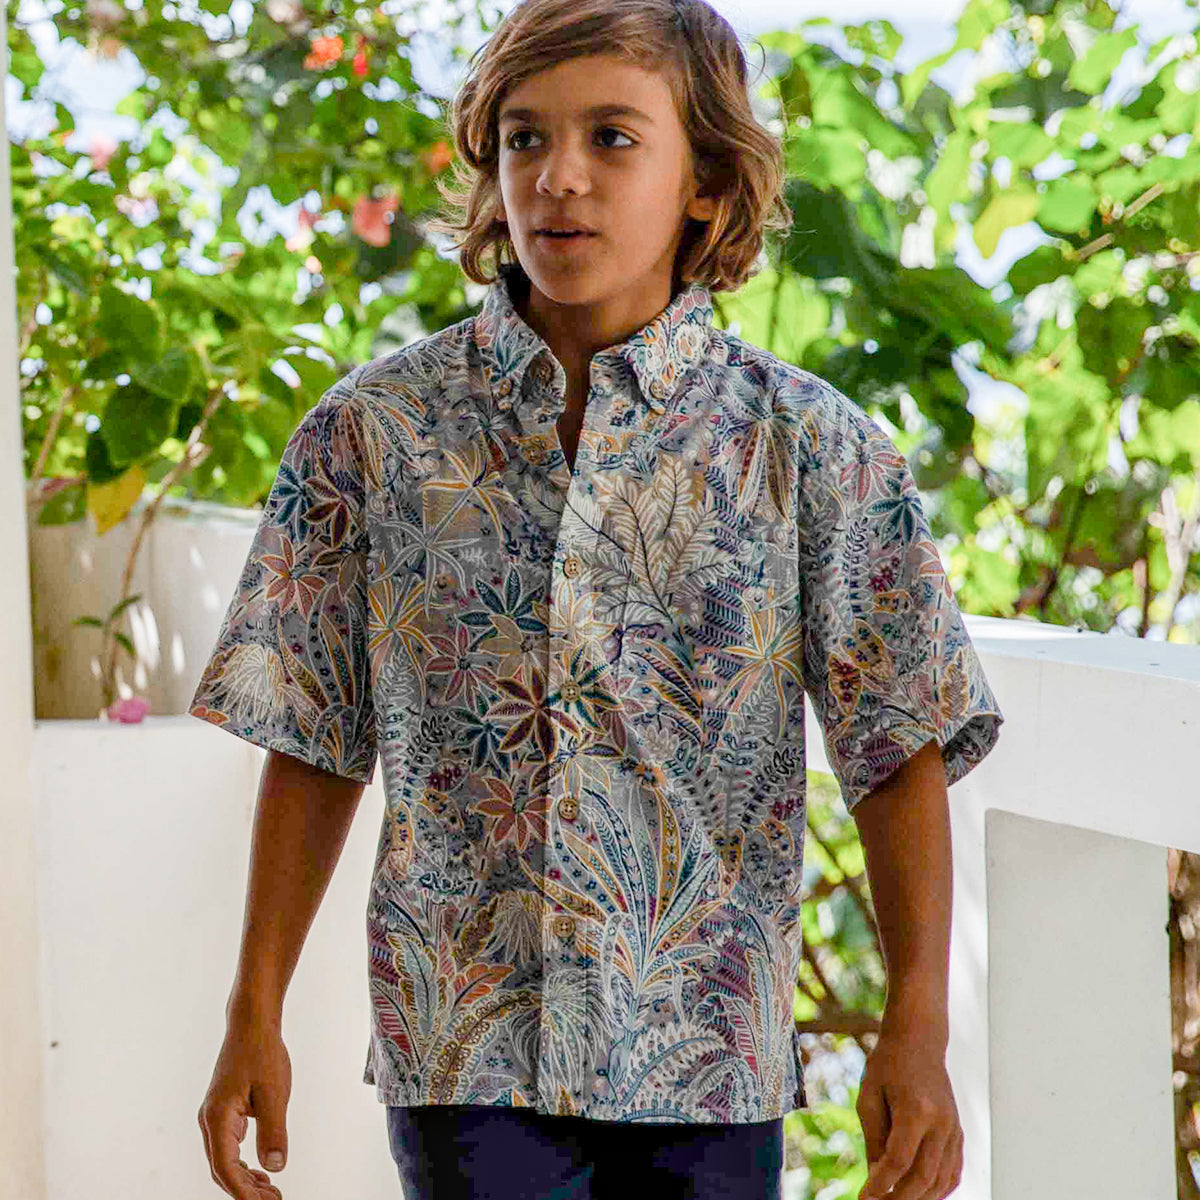 Camisa Hawaiana Infantil Estampado Palmeras Tropicales Algodón Botones Manga Corta